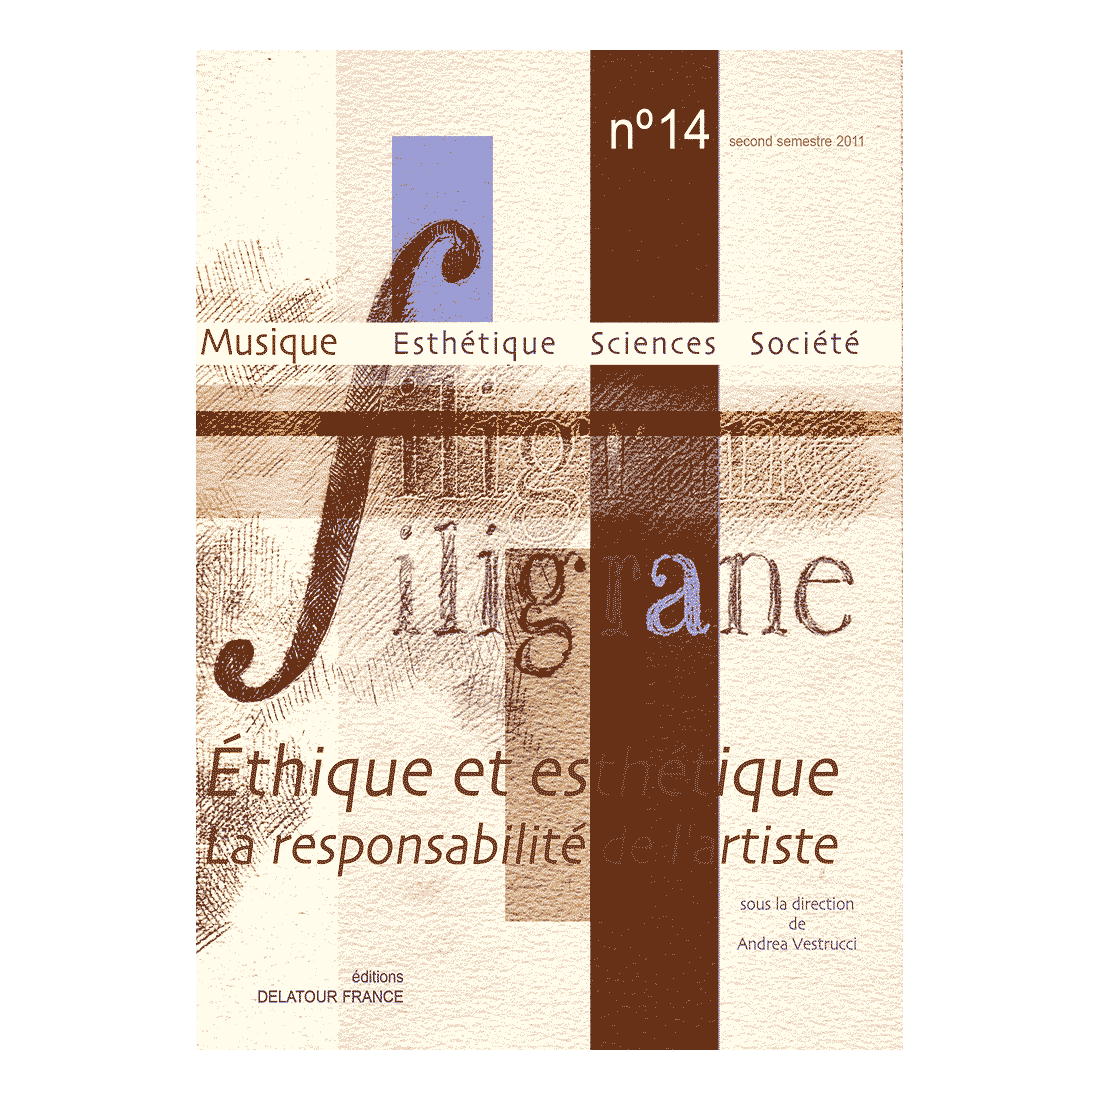 Revue Filigrane n°14 - Ethique et esthétique, la responsabilité de l'artiste